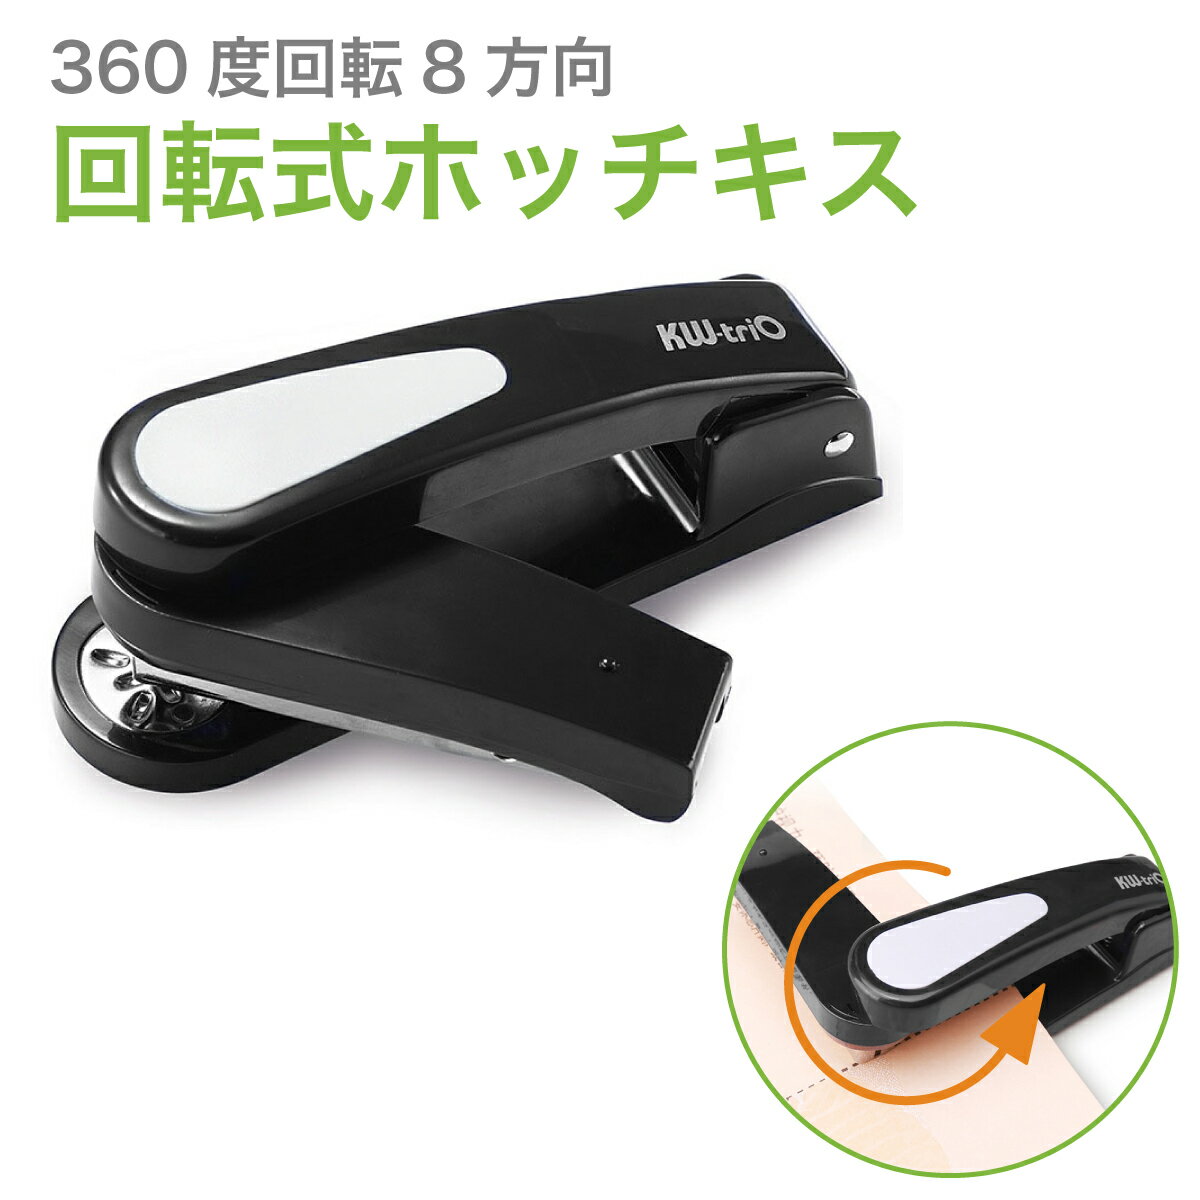 回転式 ホッチキス 360度回転 中綴じ ホッチキス芯付き 便利グッズ r-stapler